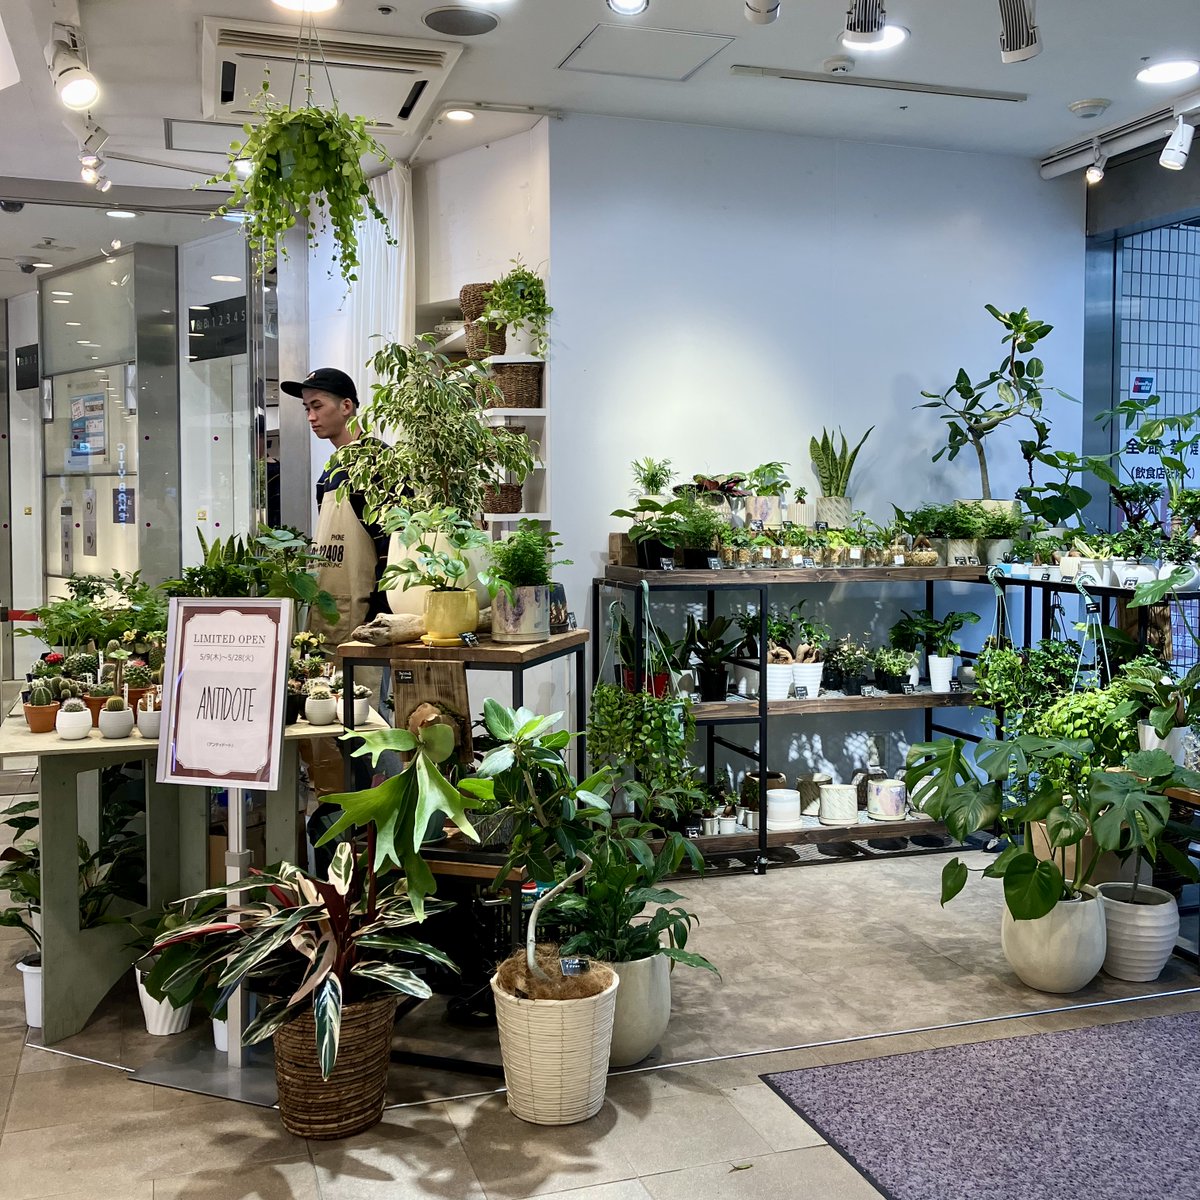 【期間限定】ANTIDOTE
「暮らしに癒し」がテーマのアンティドートのお店はまるで小さな庭のよう🌿多肉植物、観葉植物を中心に、インテリアグリーンなどをご提案。お客様のイメージに合った緑のある暮らしをコーディネートいたします。
📍1F イベントスペース📅～5/28(火)
🔗kichijoji.parco.jp/pnews/detail/?…